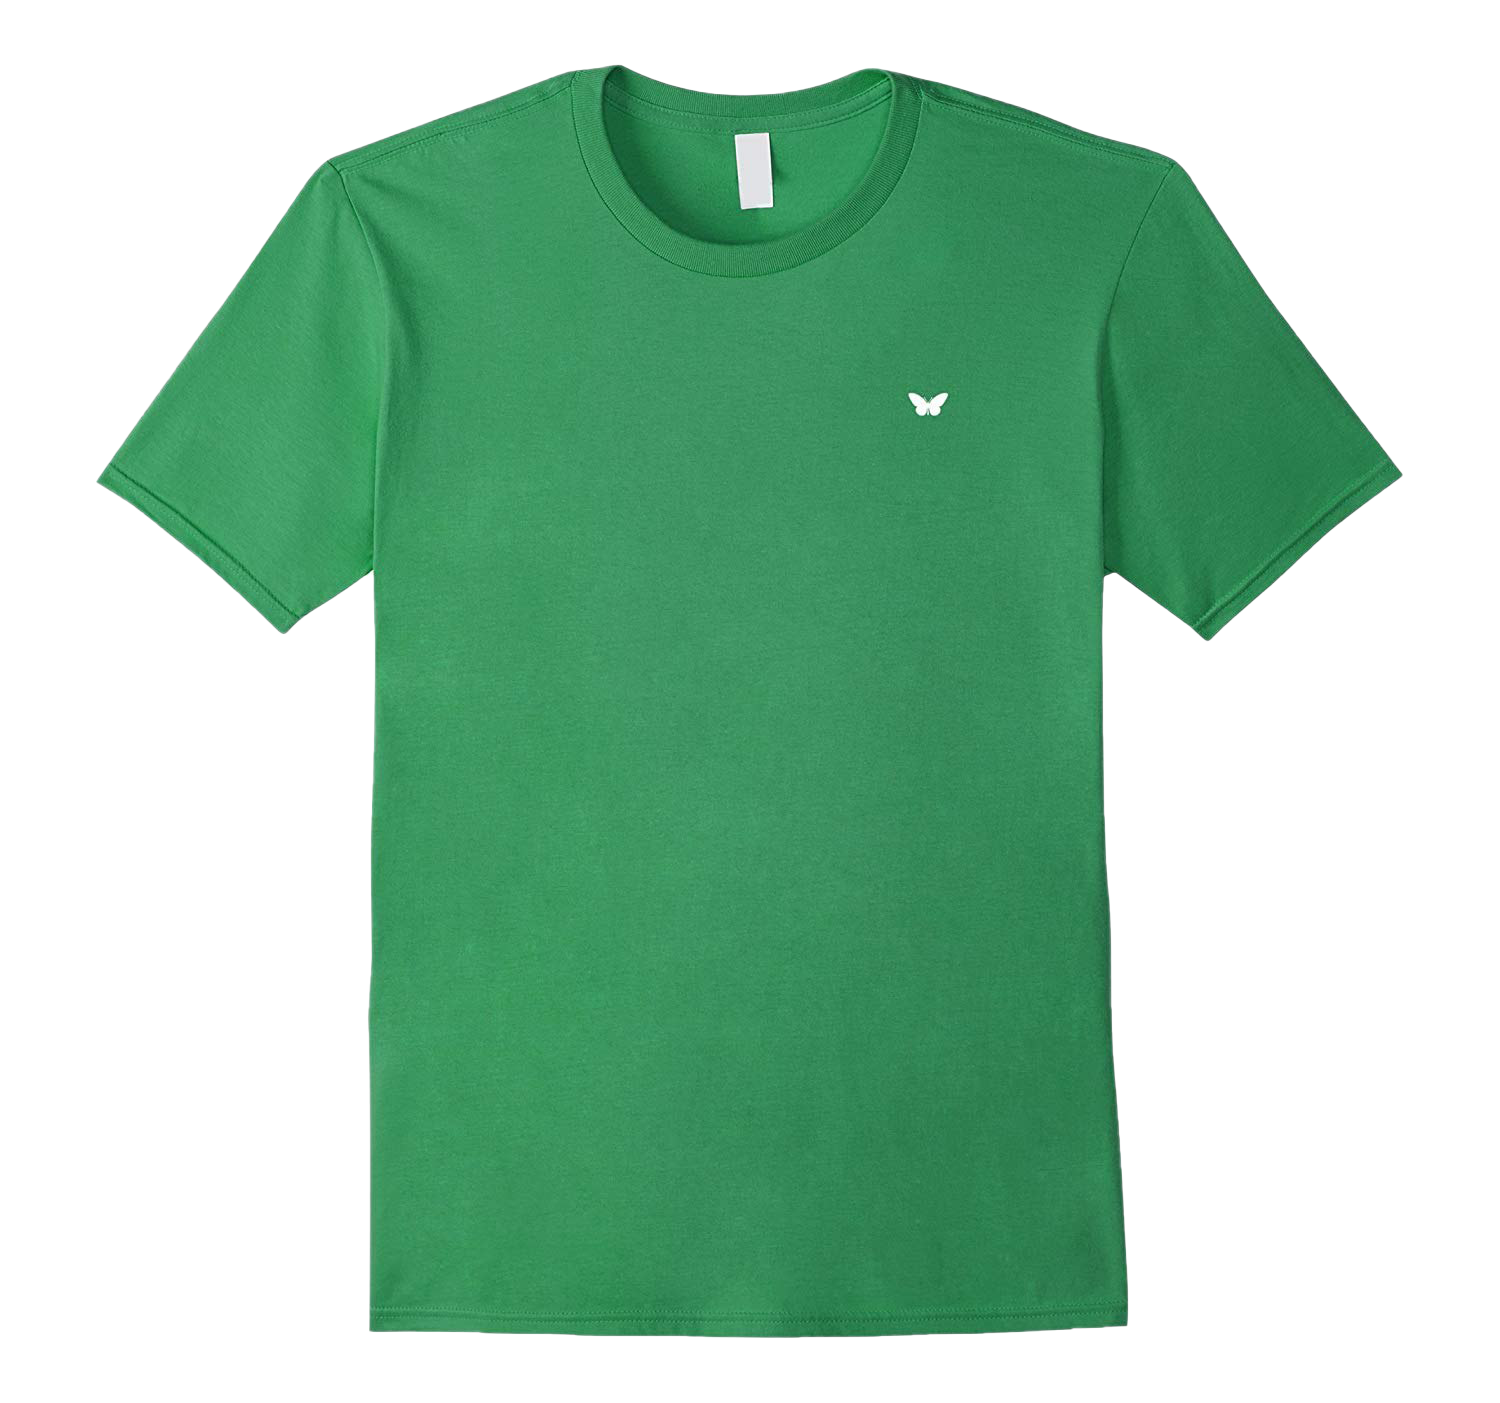 Imagen de PNG de camiseta verde lisa